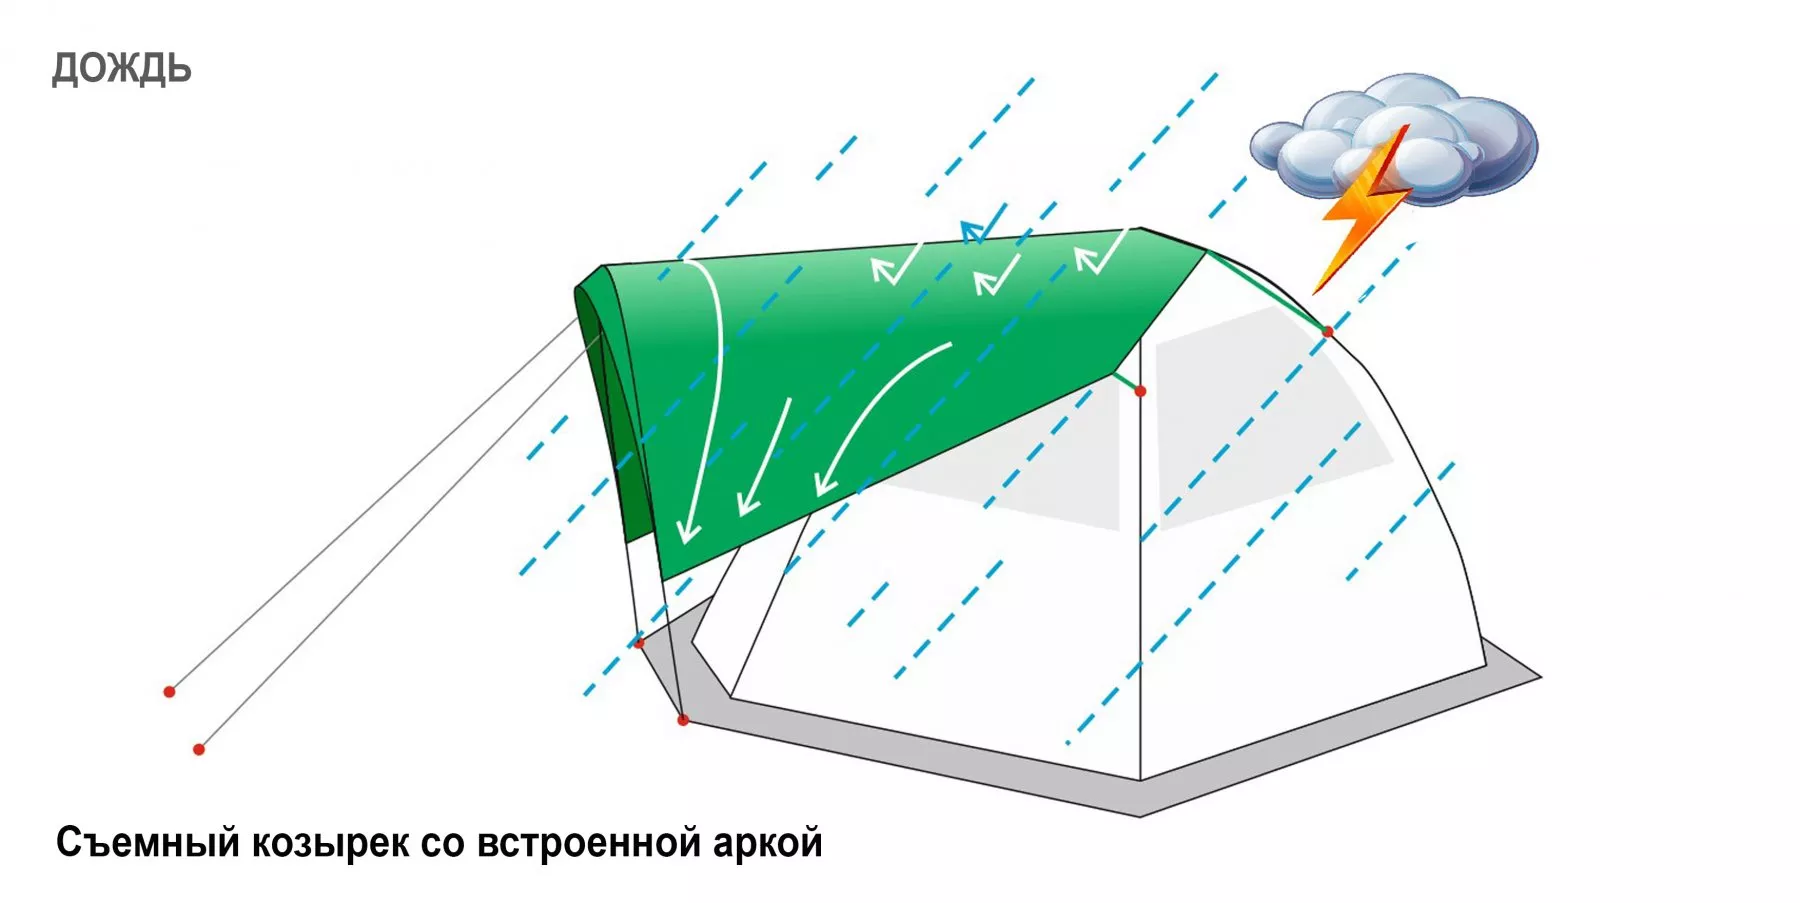 Съемный Козырек для зонтичной палатки Лотос 5 (дождь)